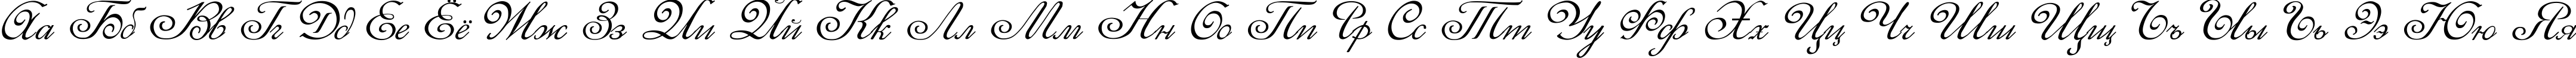 Пример написания русского алфавита шрифтом Elzevir